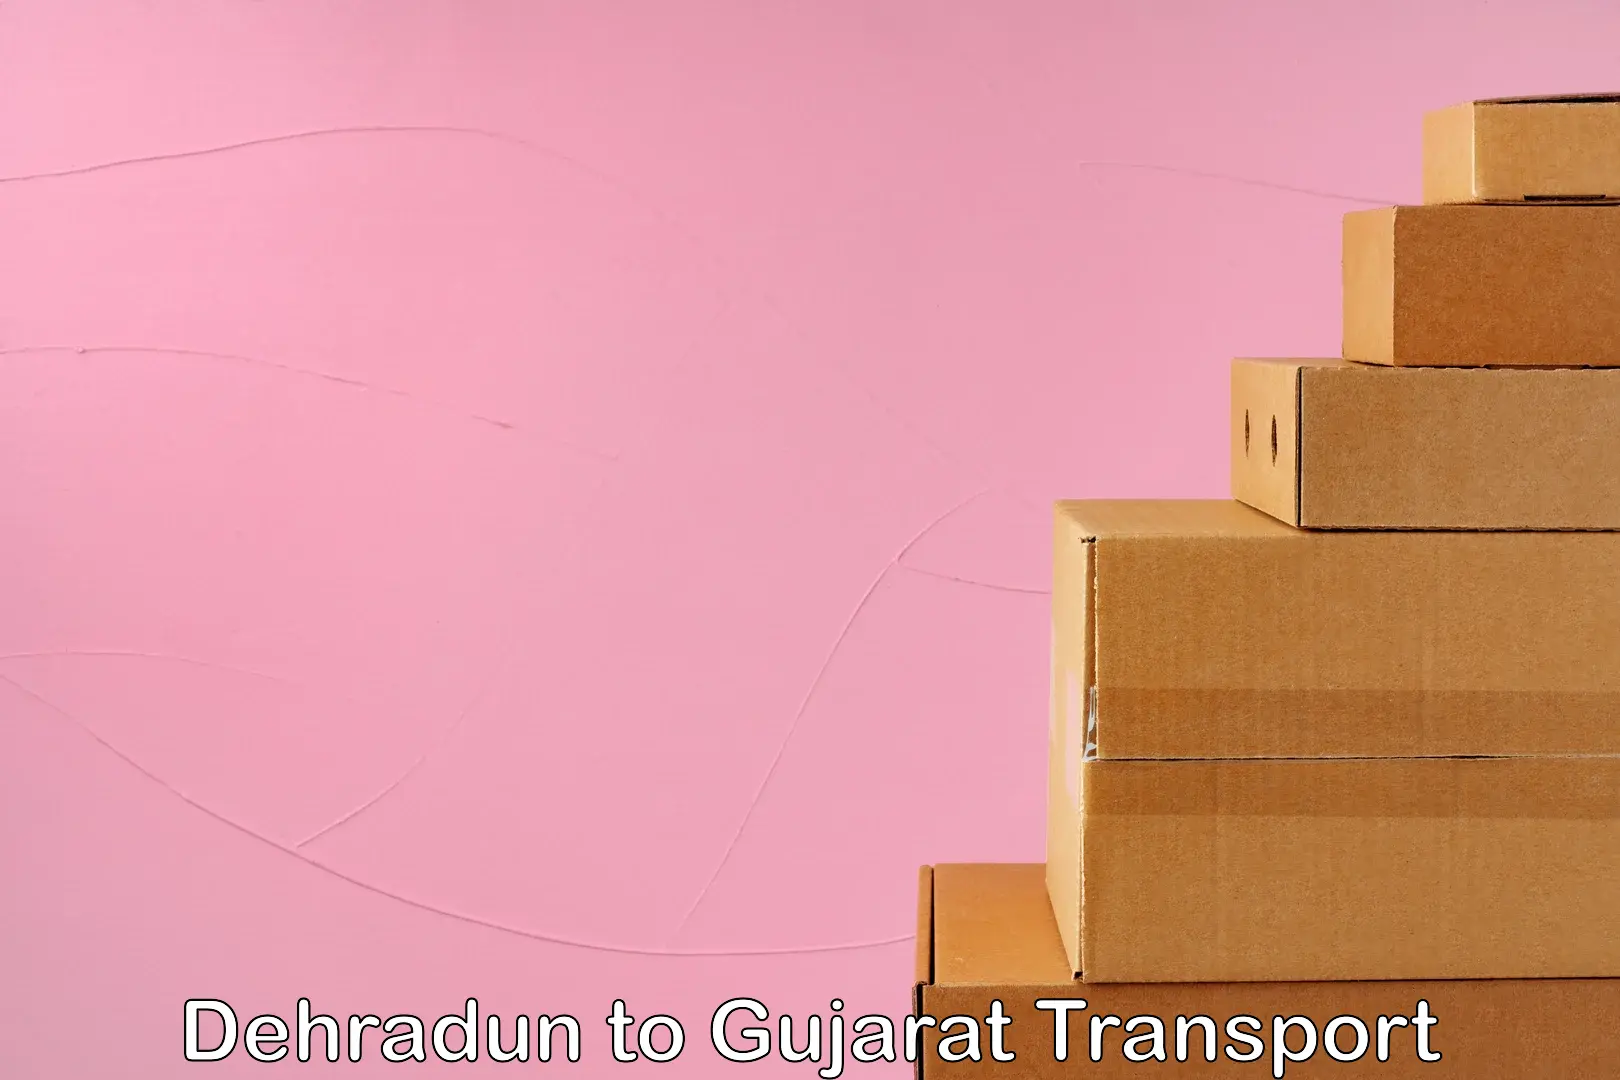 Goods delivery service Dehradun to Gujarat